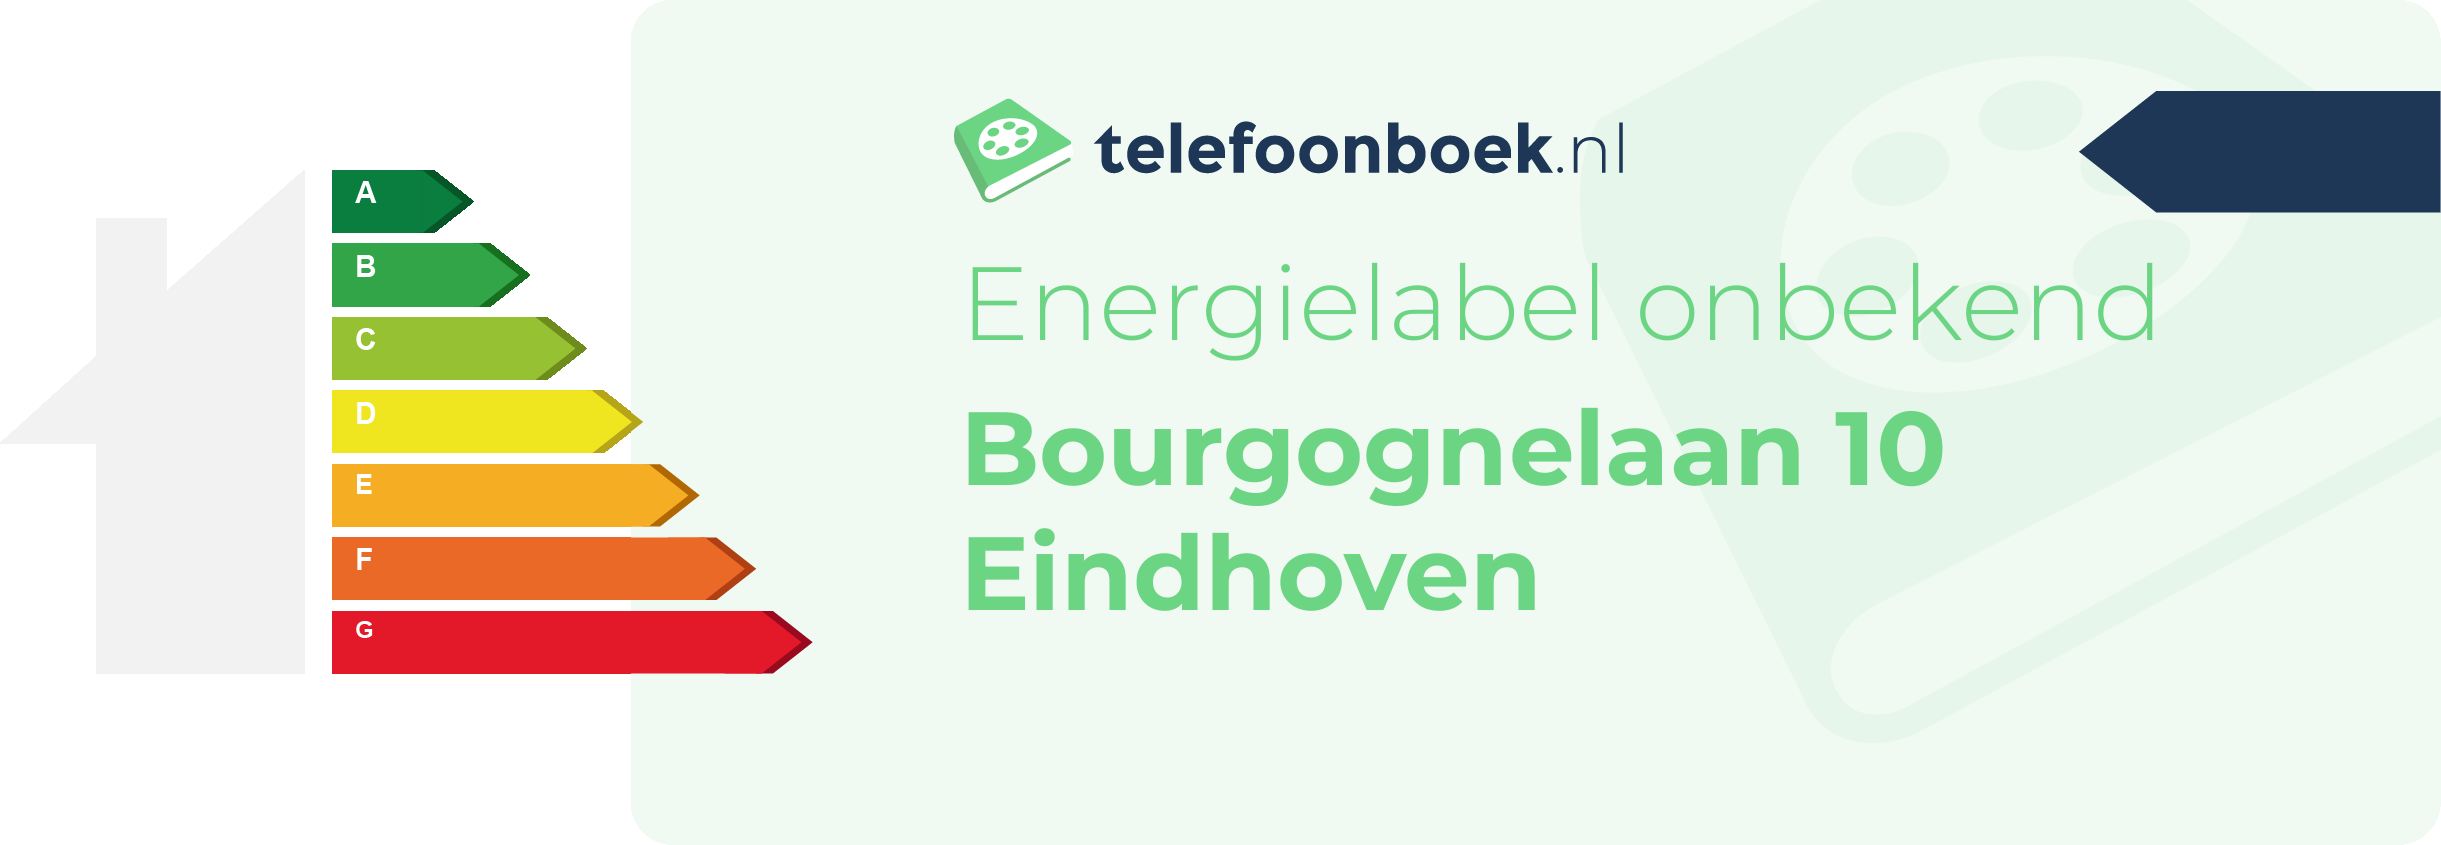 Energielabel Bourgognelaan 10 Eindhoven